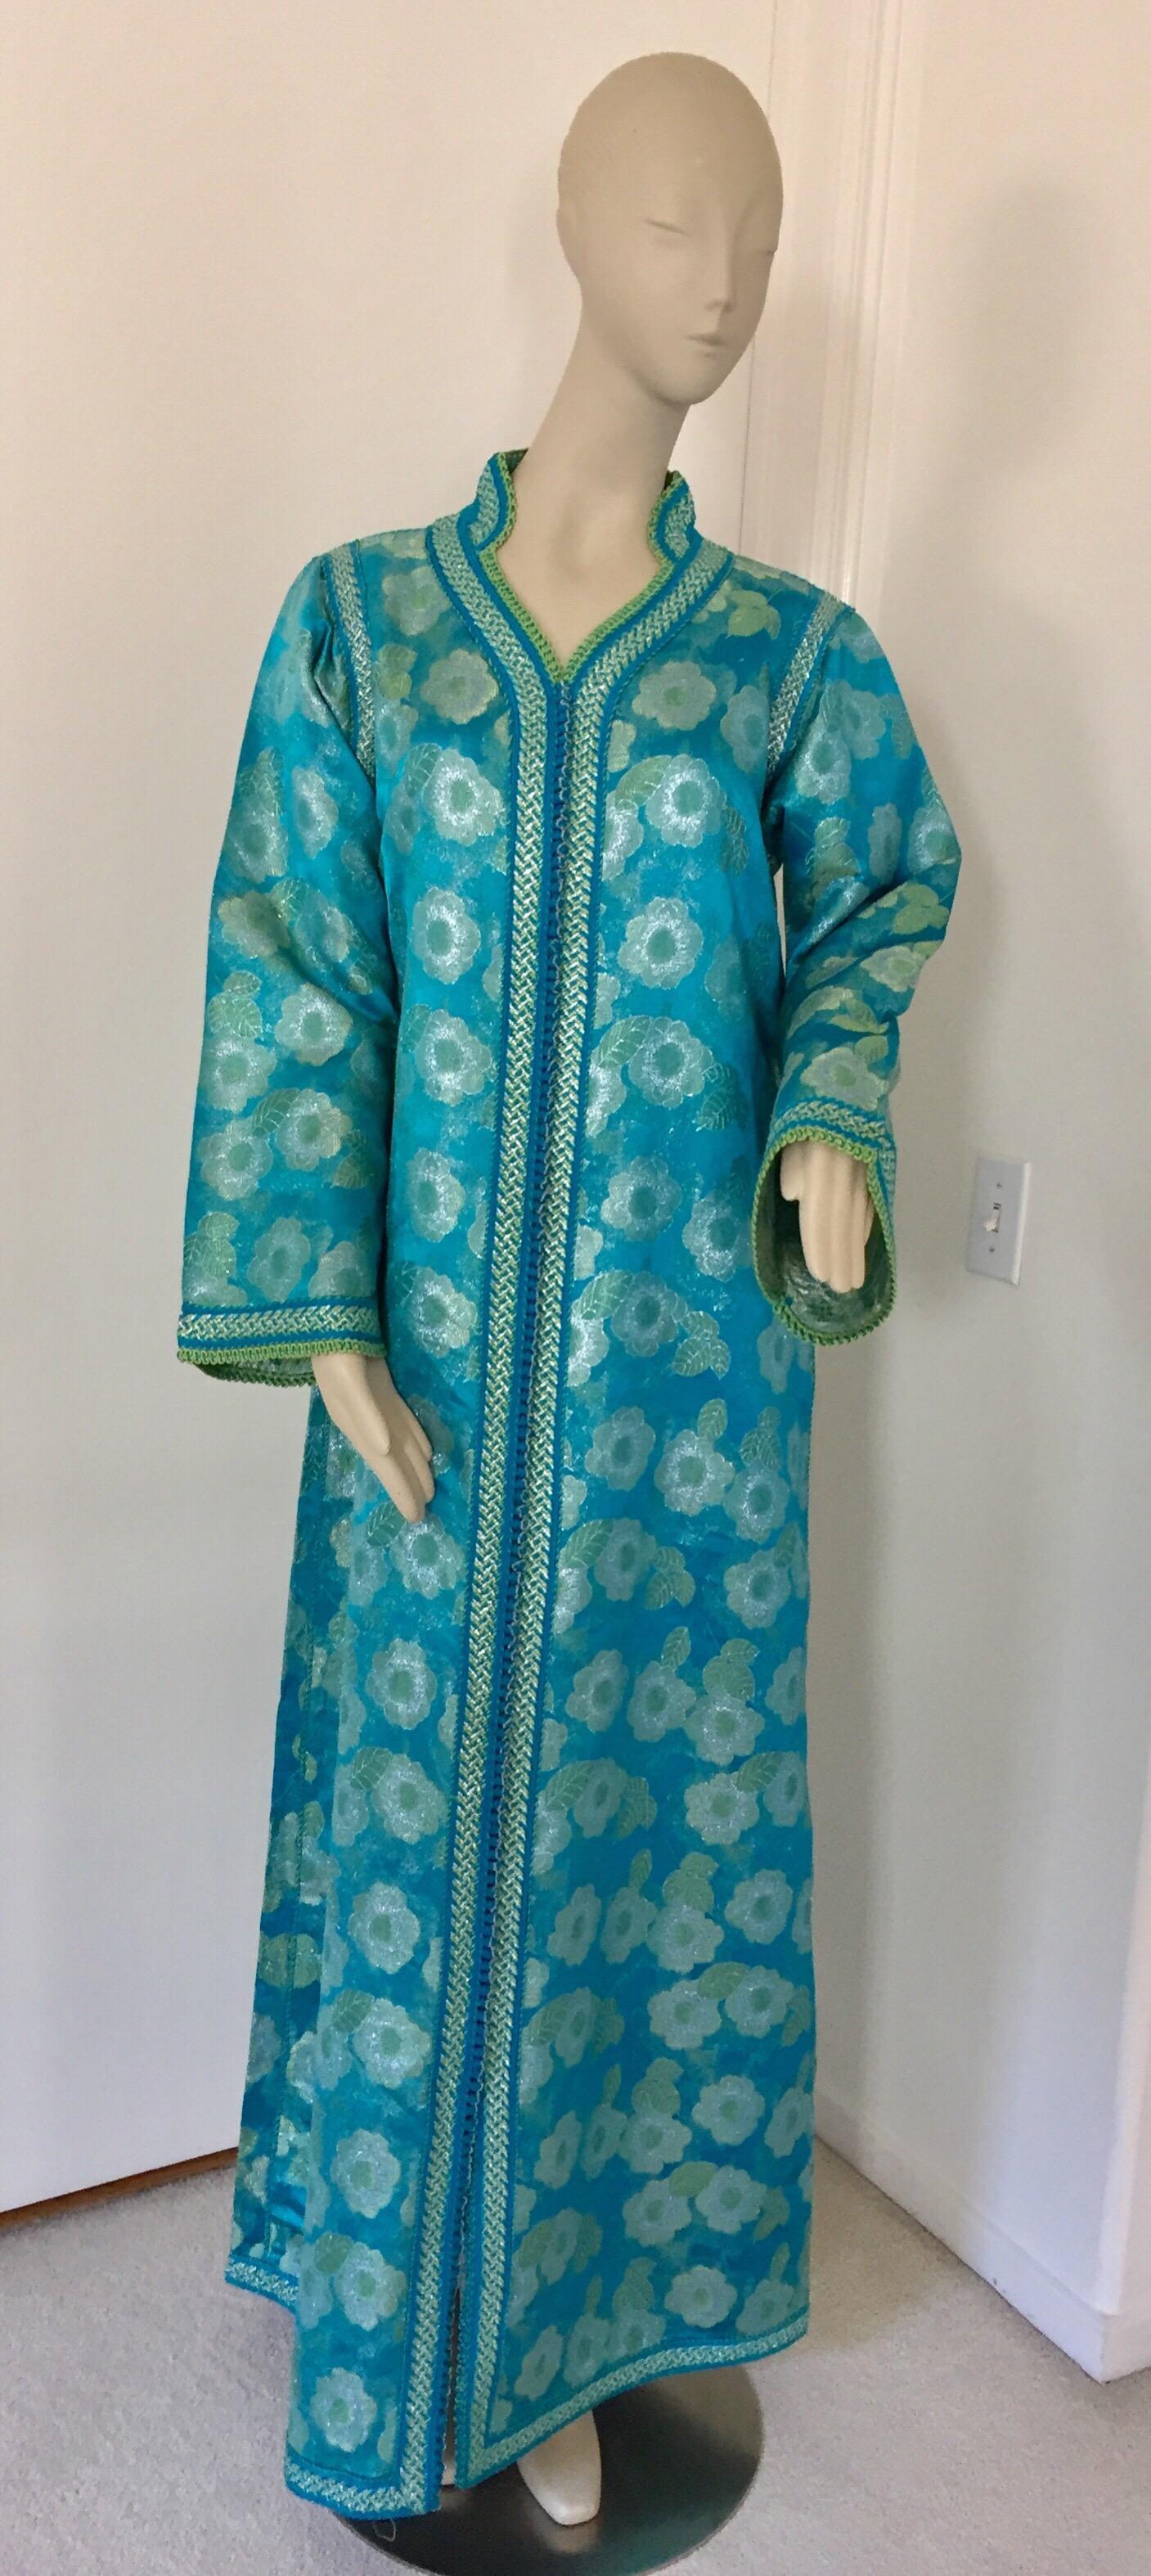 Élégant caftan marocain en lames fleuries turquoises et dorées, avec bordure métallique et brodée,
vers les années 1970.
Ce caftan à la robe longue et longue est brodé et embelli entièrement à la main.
Il est confectionné au Maroc et ajusté pour